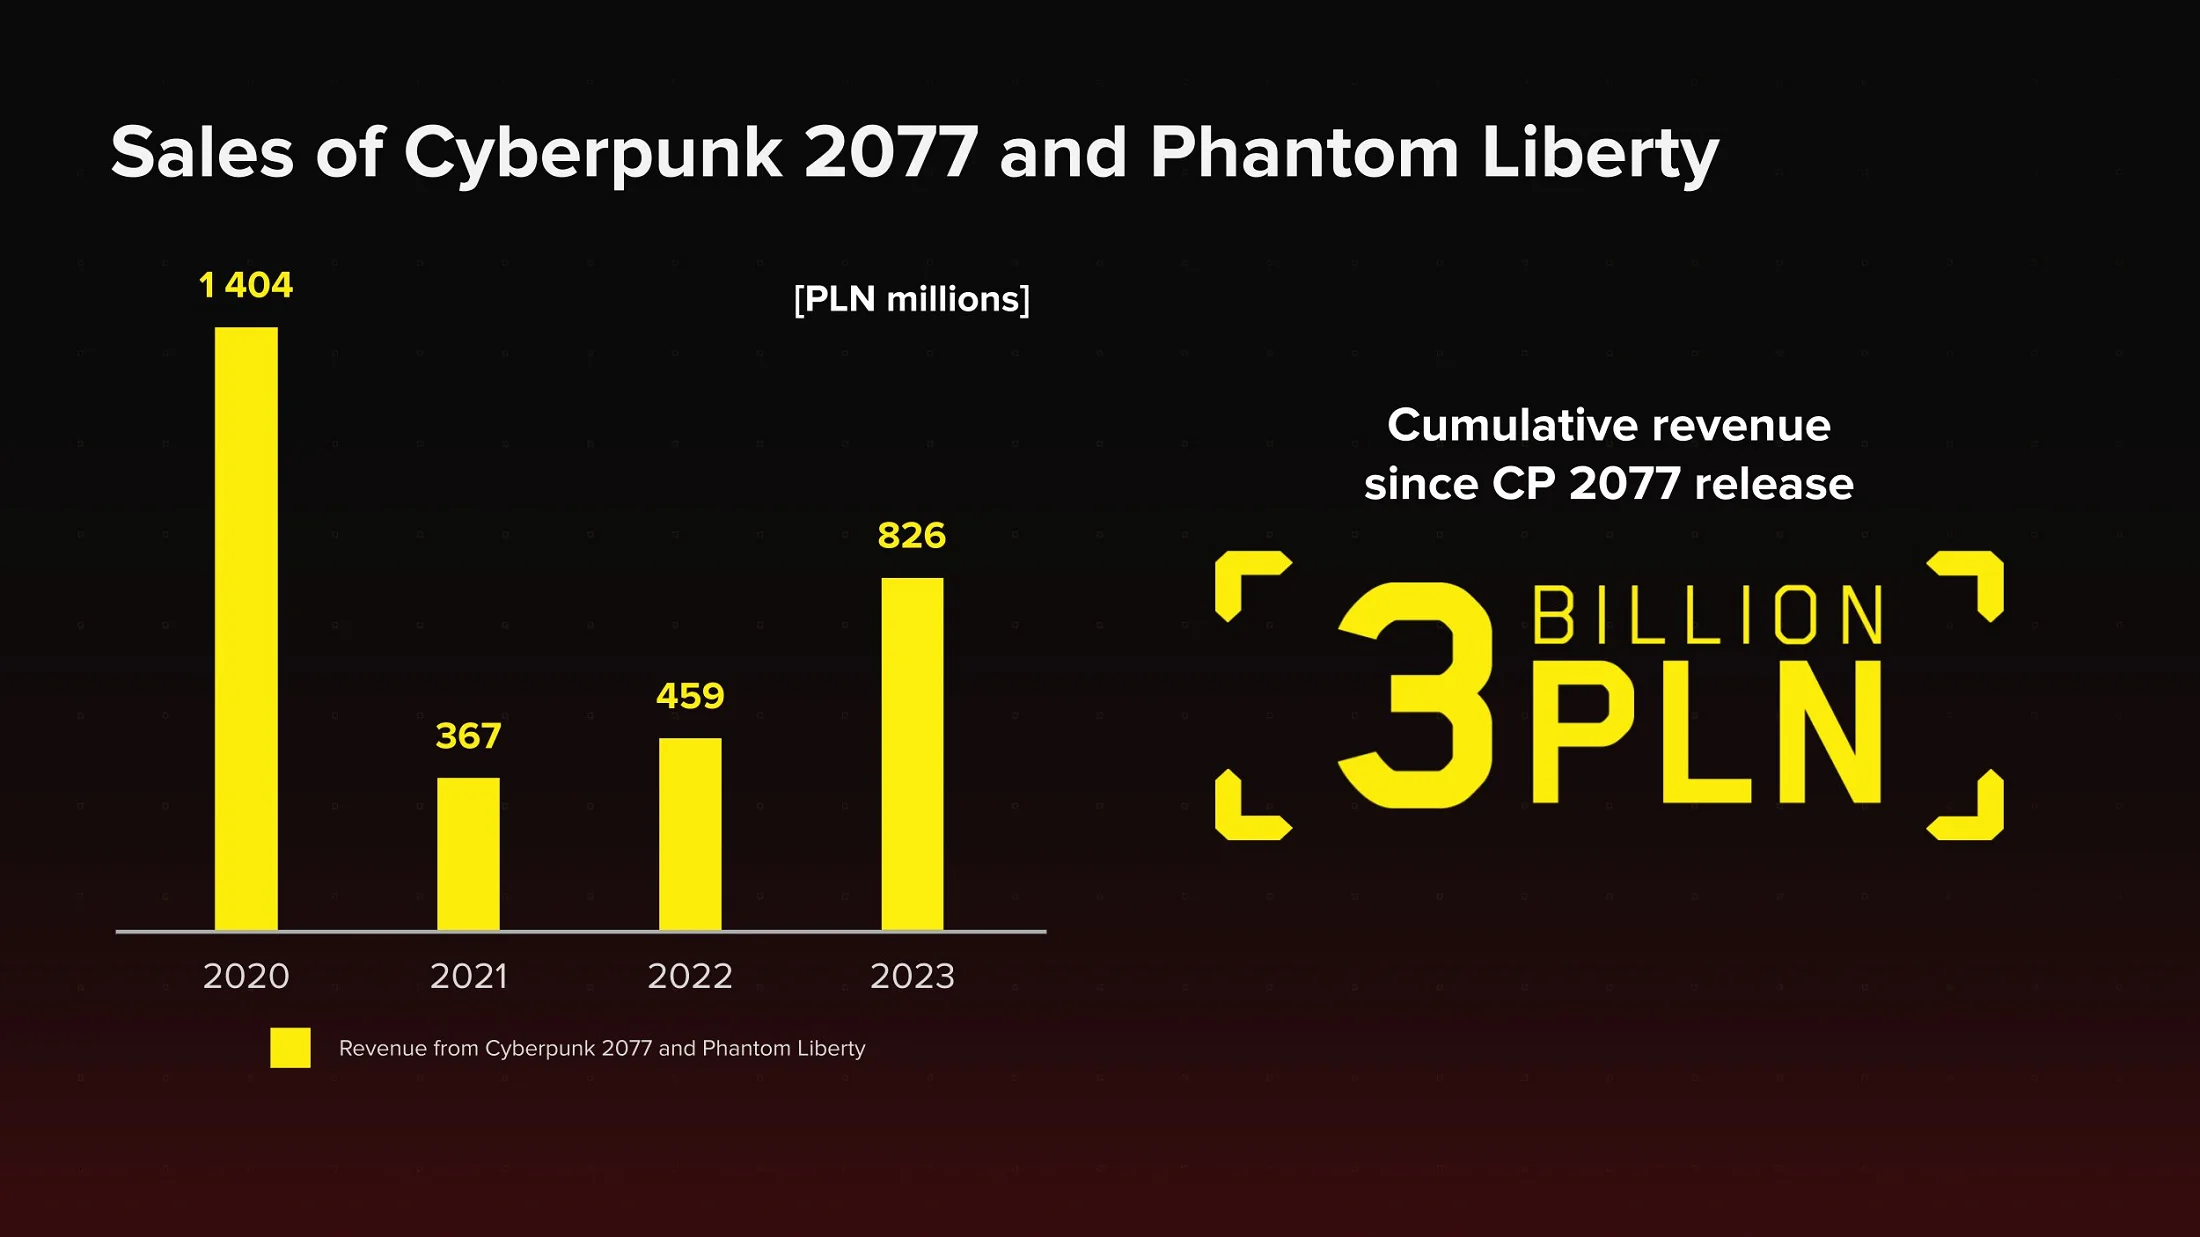 Cyberpunk 2077 заработала своим создателям 3 миллиарда злотых с момента релиза - фото 1